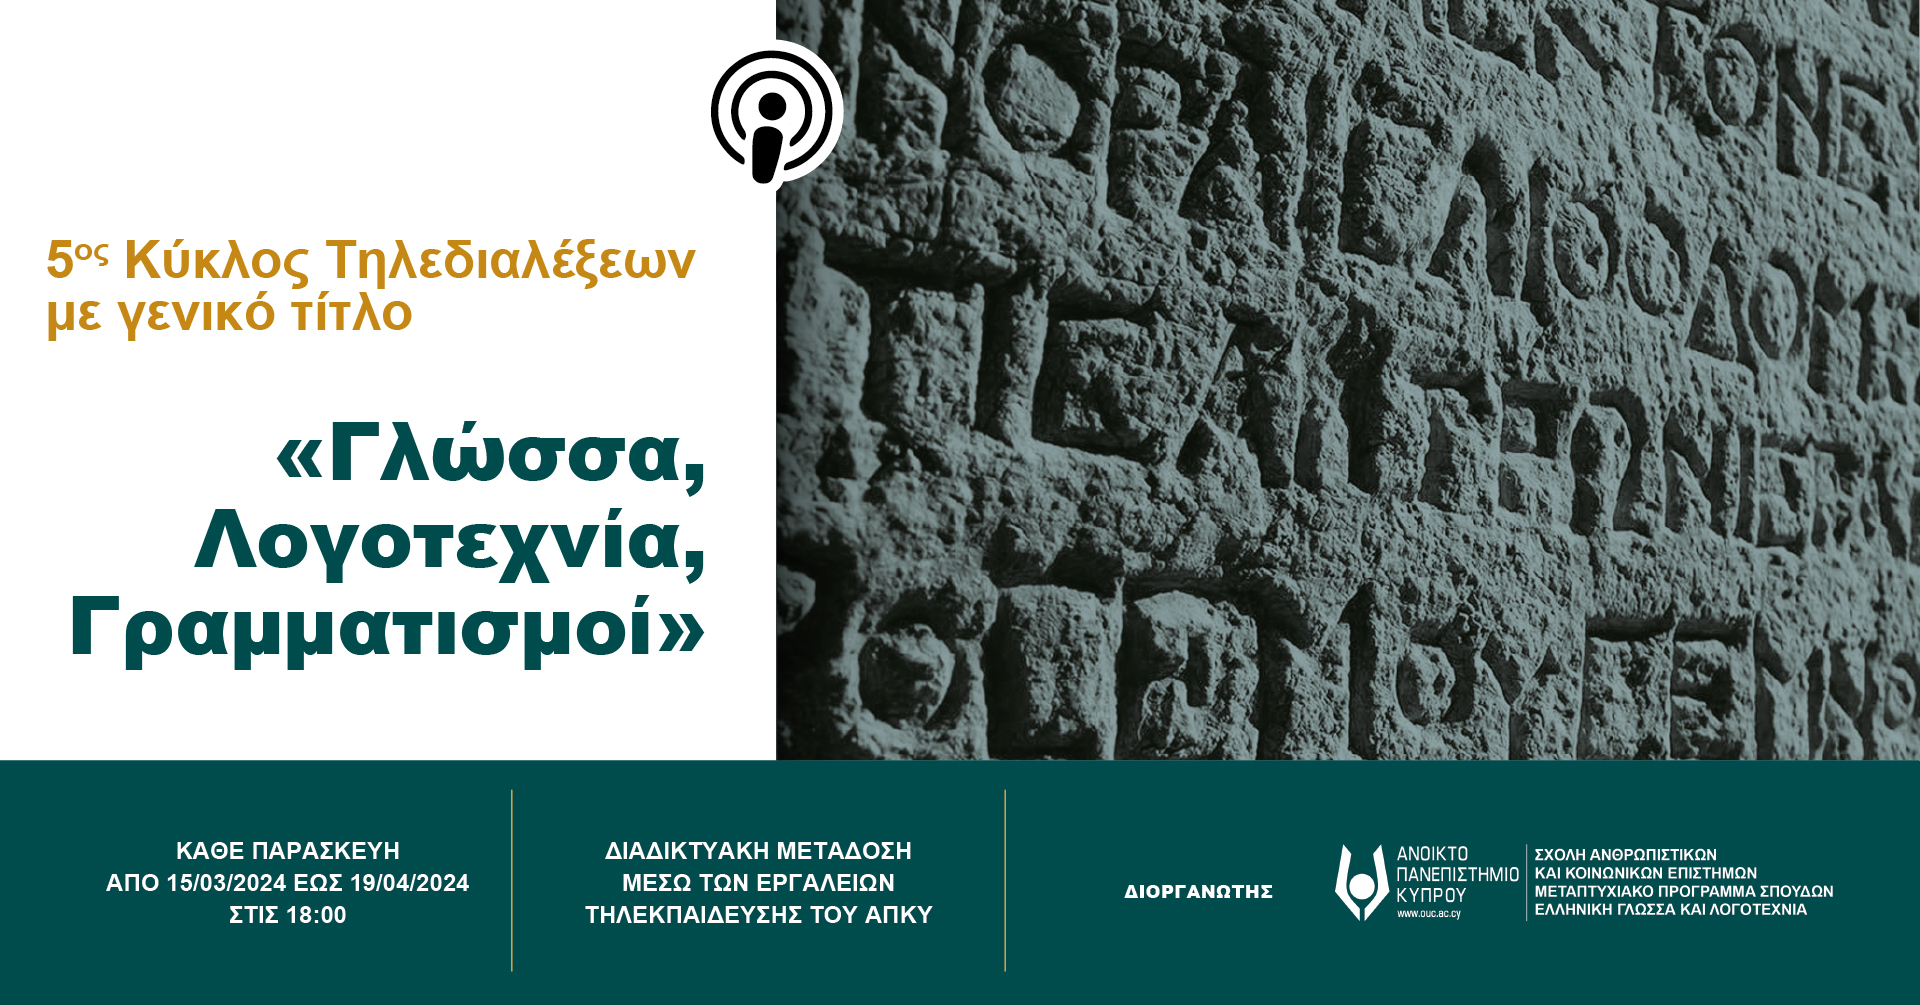 5ος Κύκλος της Σειράς Τηλεδιαλέξεων «Γλώσσα, Λογοτεχνία, Γραμματισμοί» από το Μεταπτυχιακό πρόγραμμα «Ελληνική Γλώσσα και Λογοτεχνία»